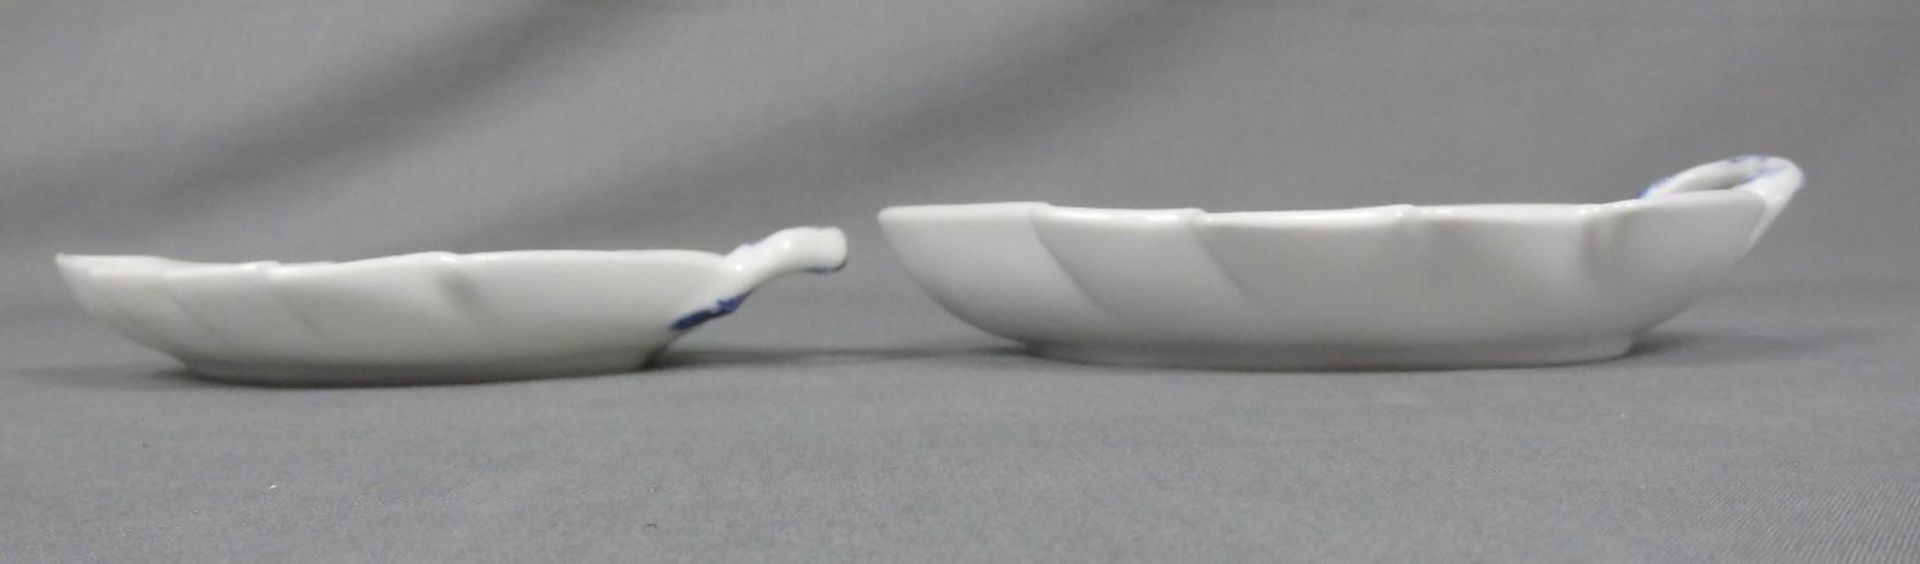 PAAR BLATTSCHALEN unterschiedlicher Größe / bowls, Porzellan, Manufaktur Royal Copenhagen, Marken - Image 2 of 3